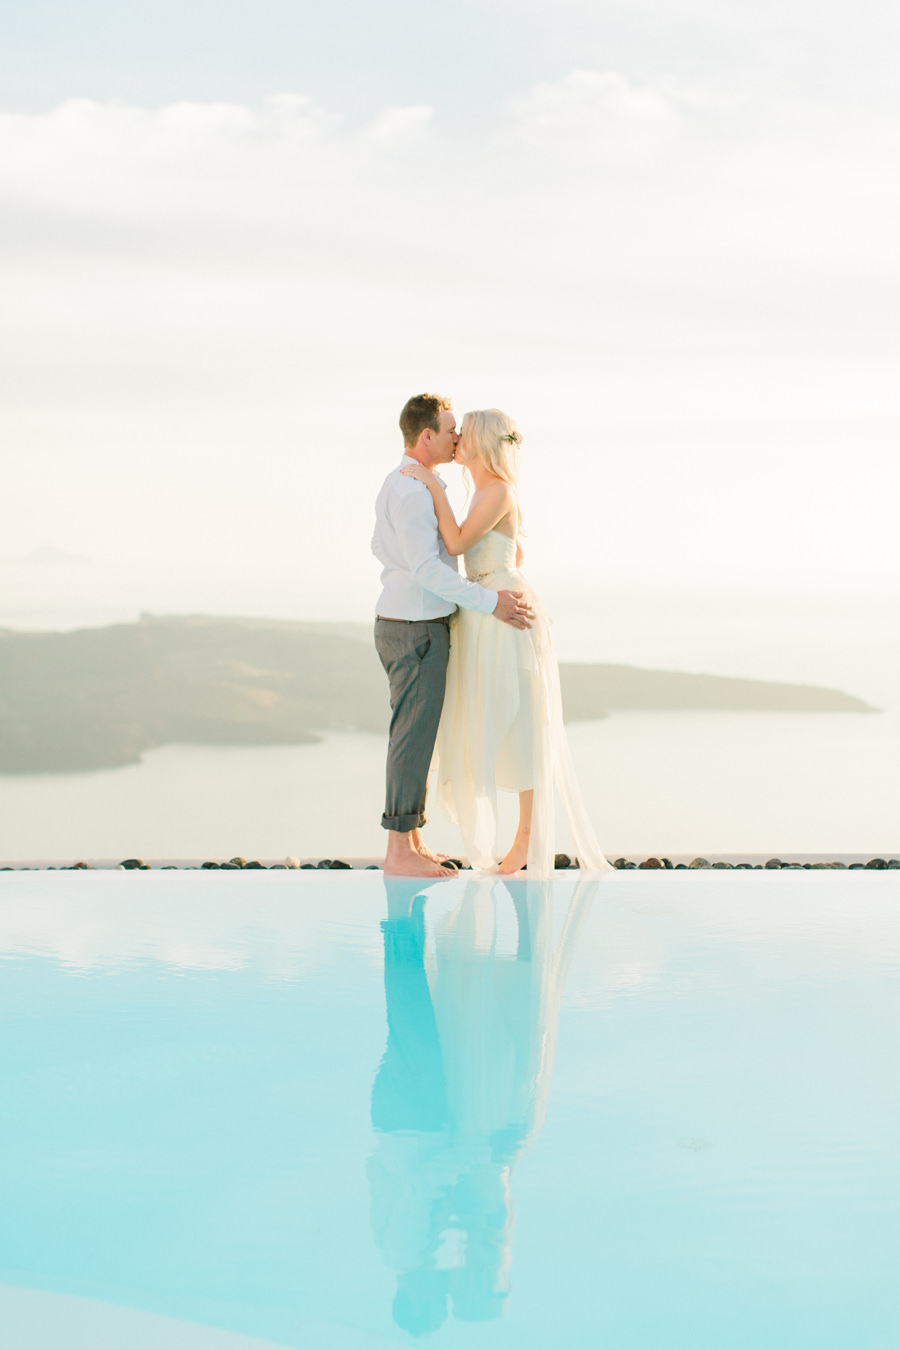 Bohemian elopement in Santorini